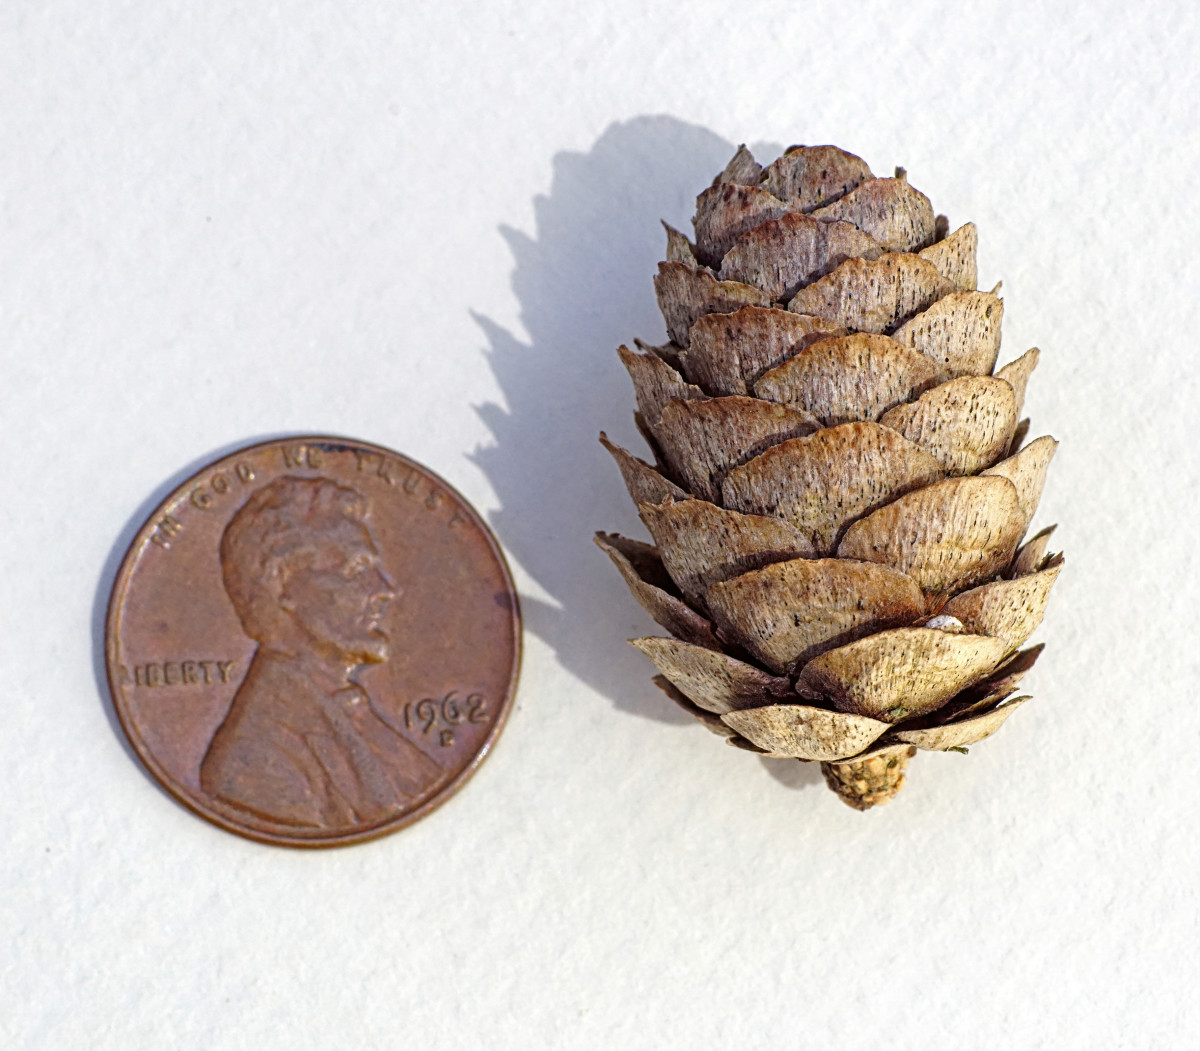 Tamarack/Eastern or American Larch seed cone (female)